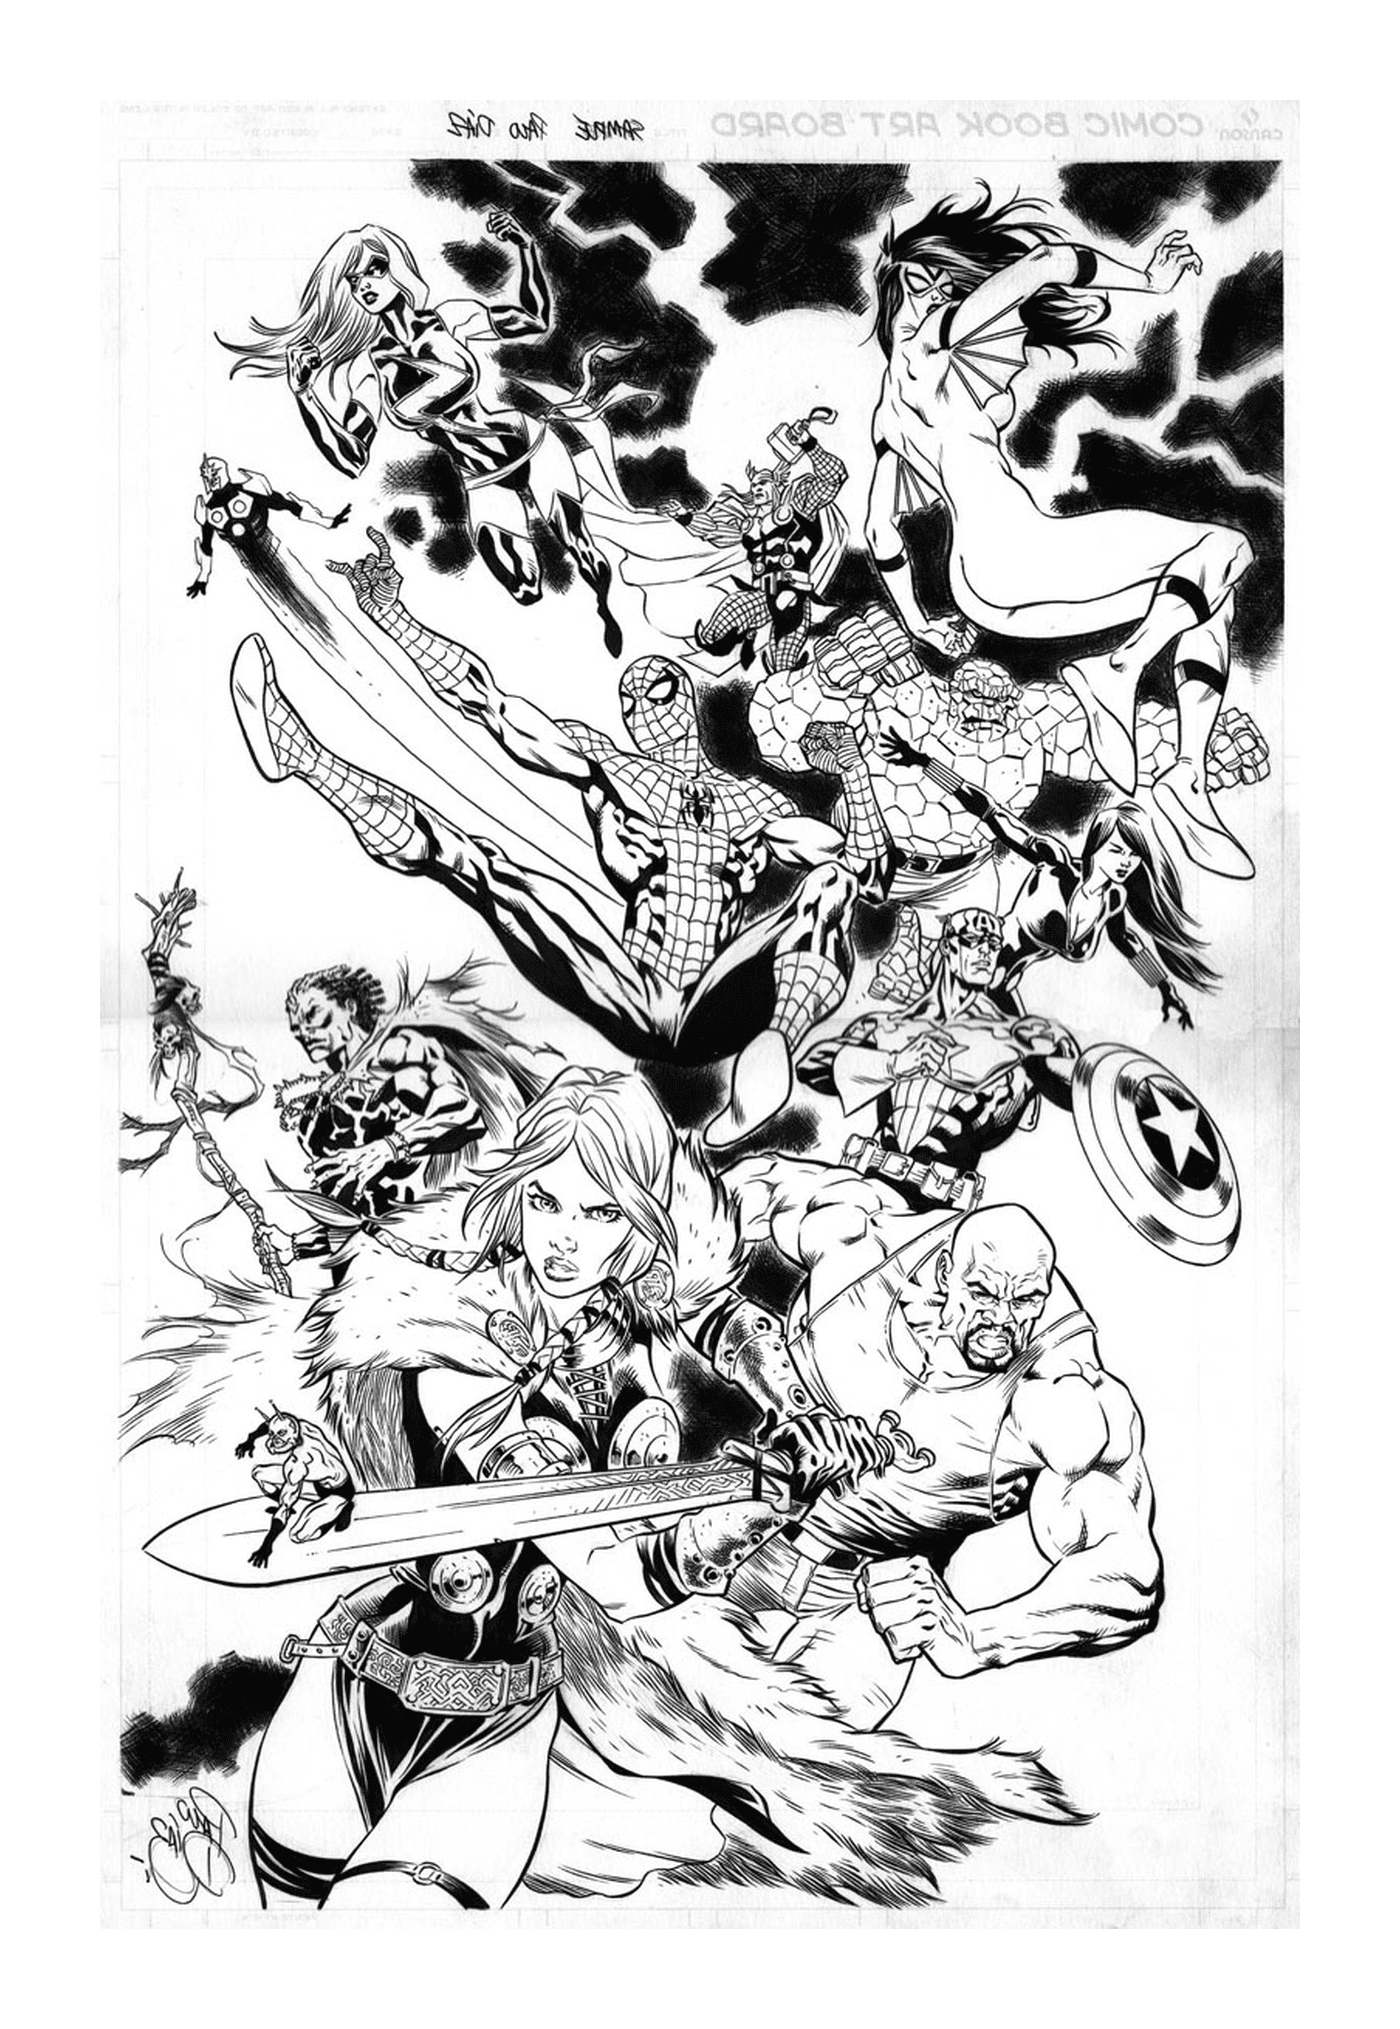  Un grupo de superhéroes en blanco y negro 